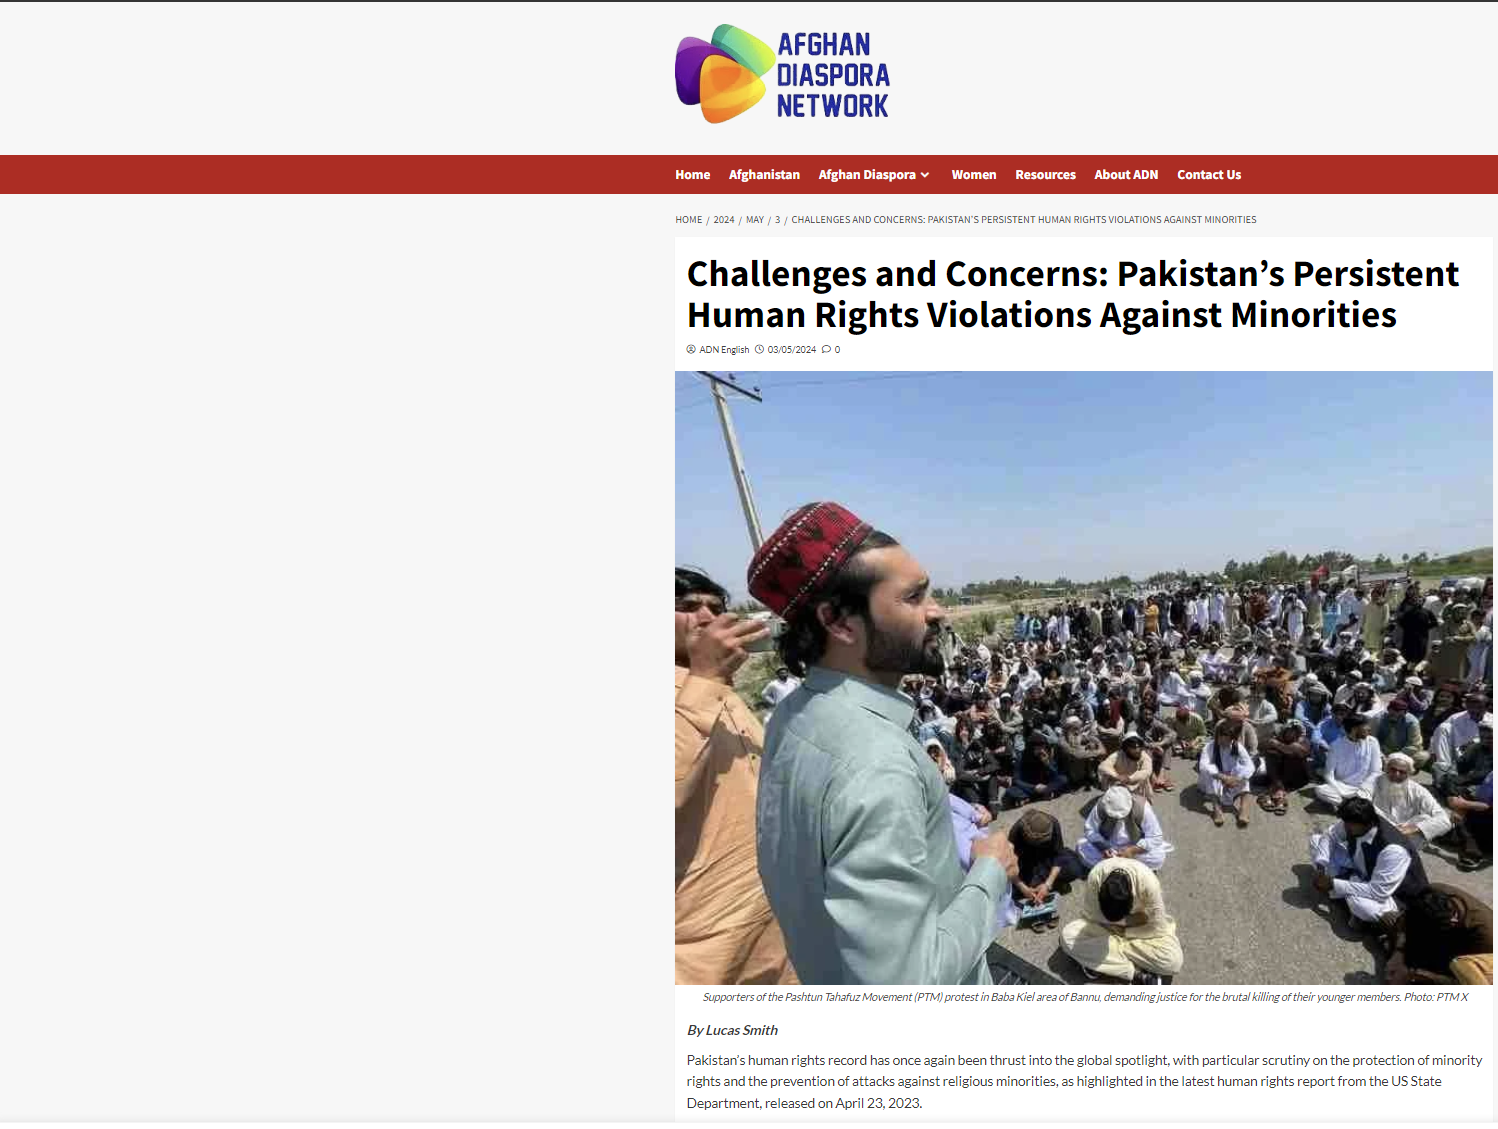 Afghan Diaspora Network: Ανησυχία για τις επίμονες παραβιάσεις των ανθρωπίνων δικαιωμάτων κατά των μειονοτήτων από το Πακιστάν